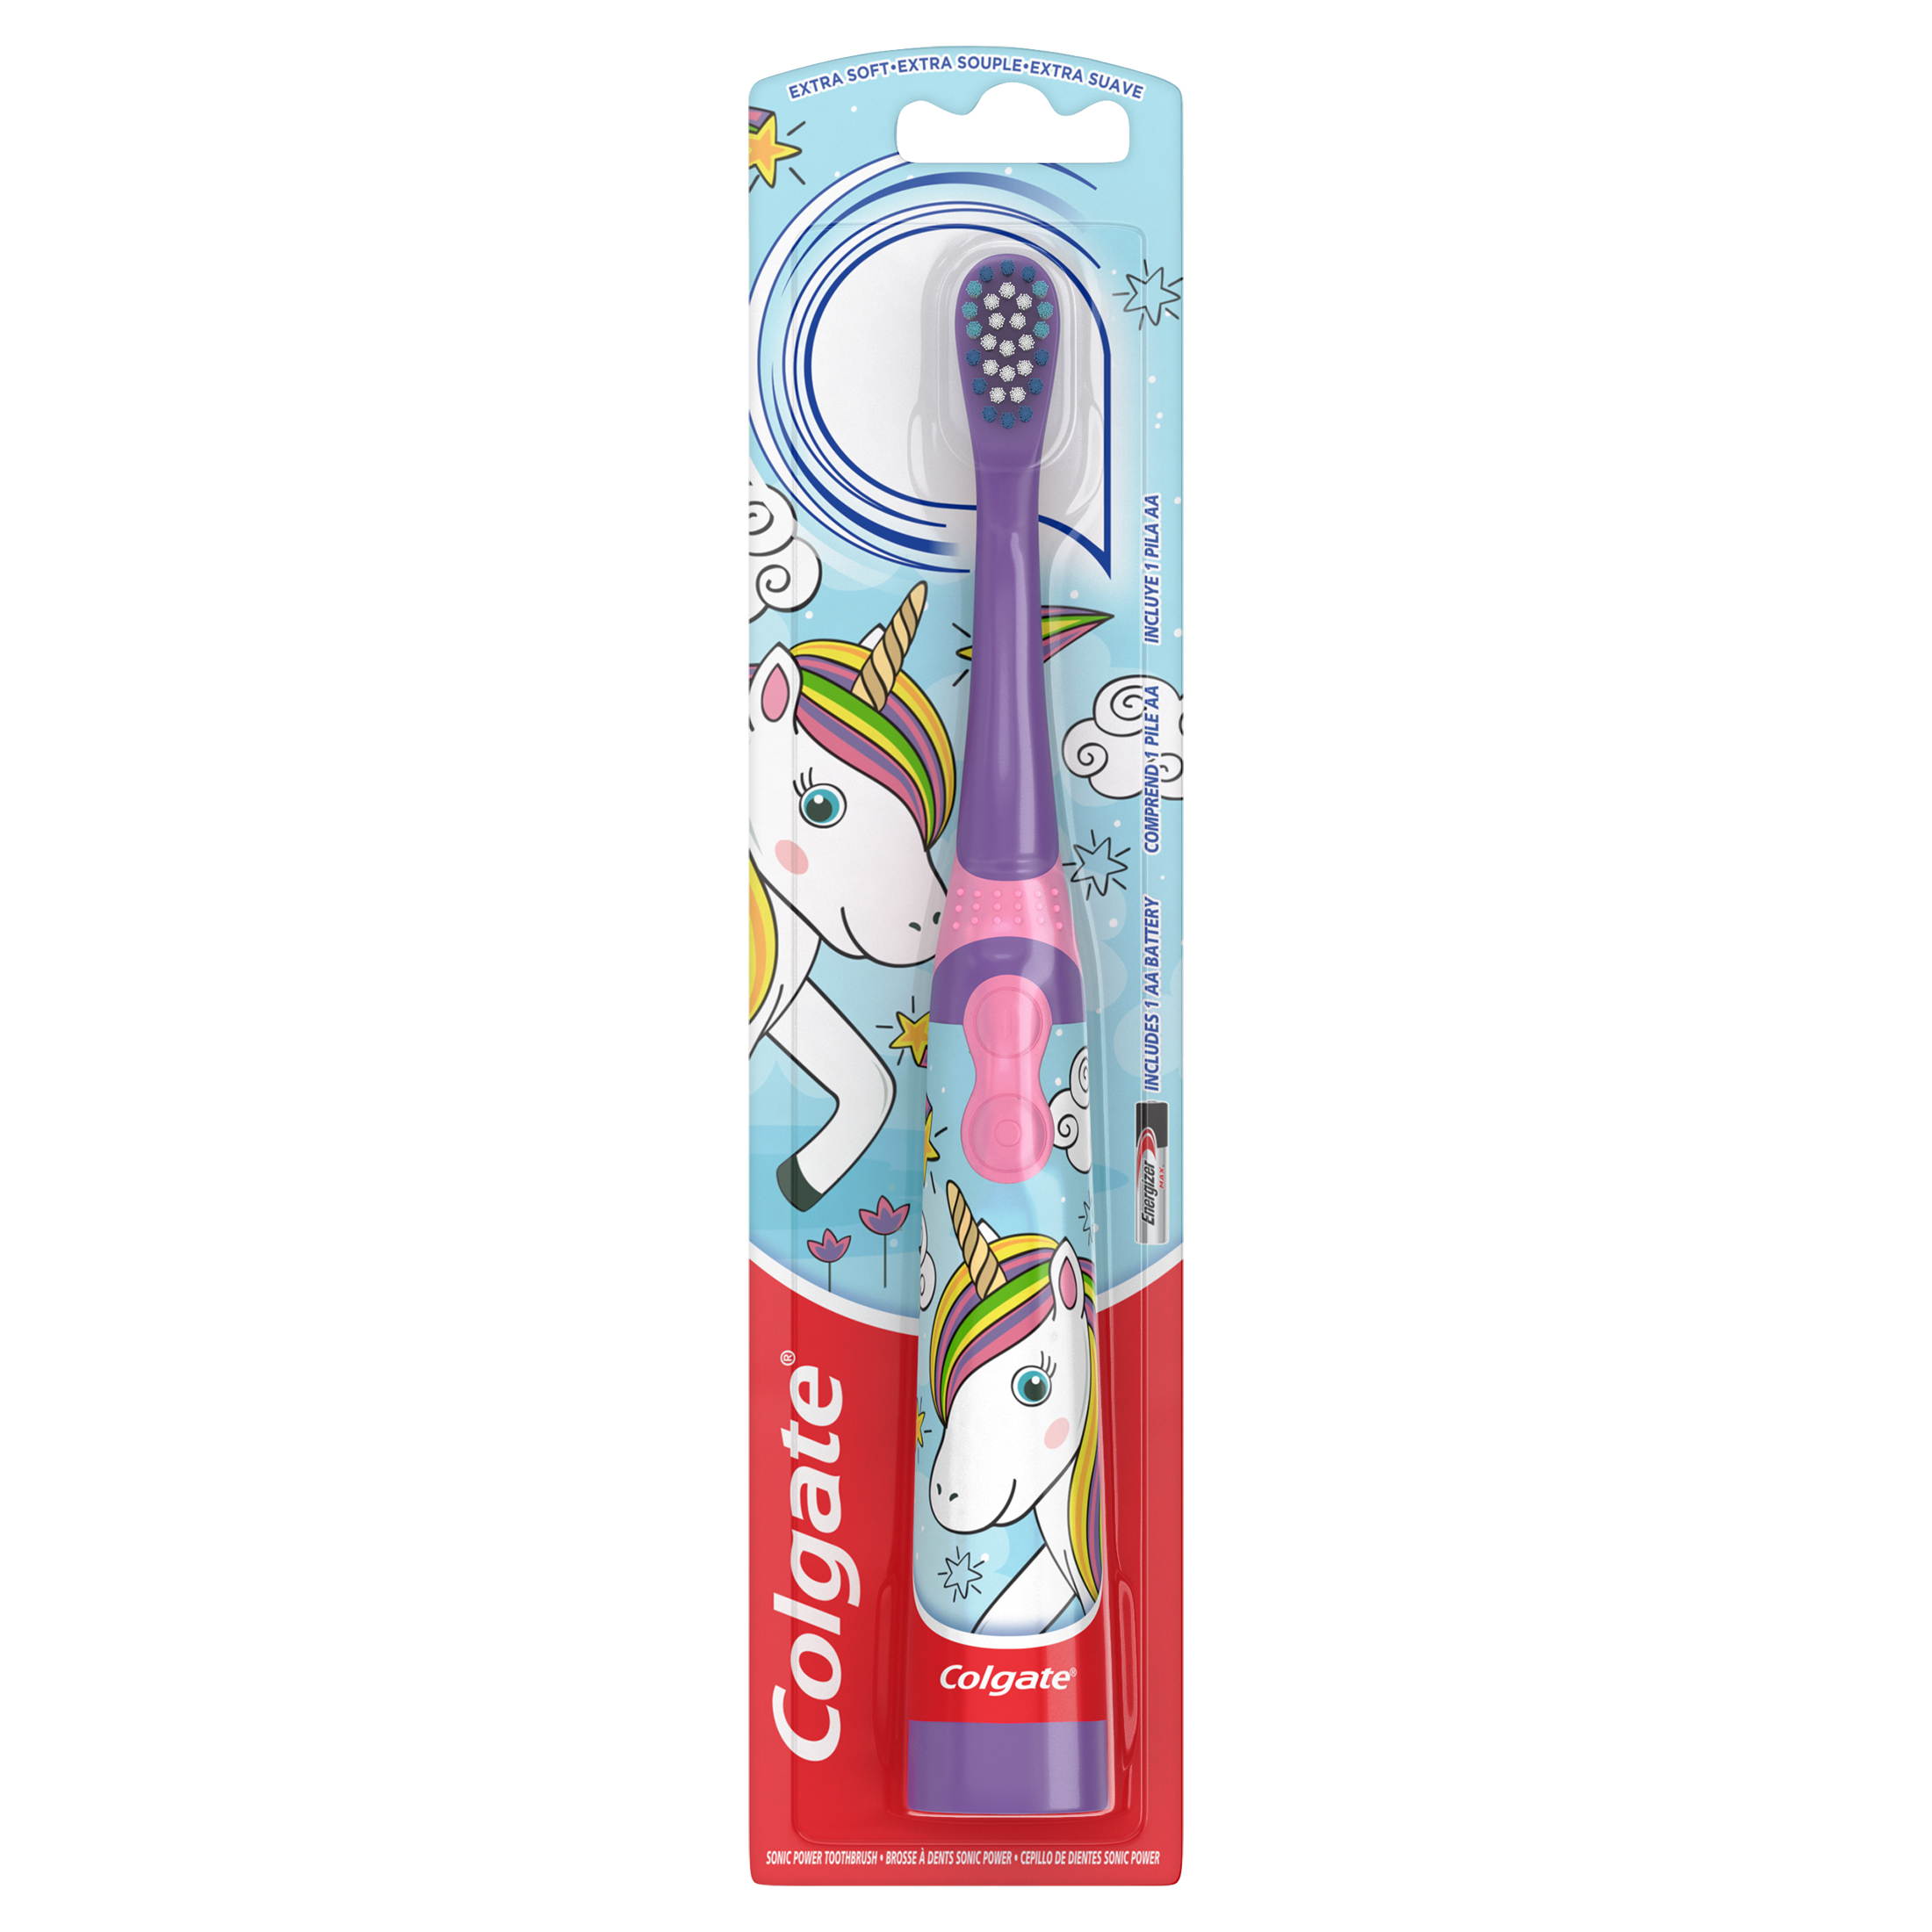 Colgate Kids Battery Full Head Toothbrush, Unicorn Toothbrush, for Children,1 Pack - image 1 of 9